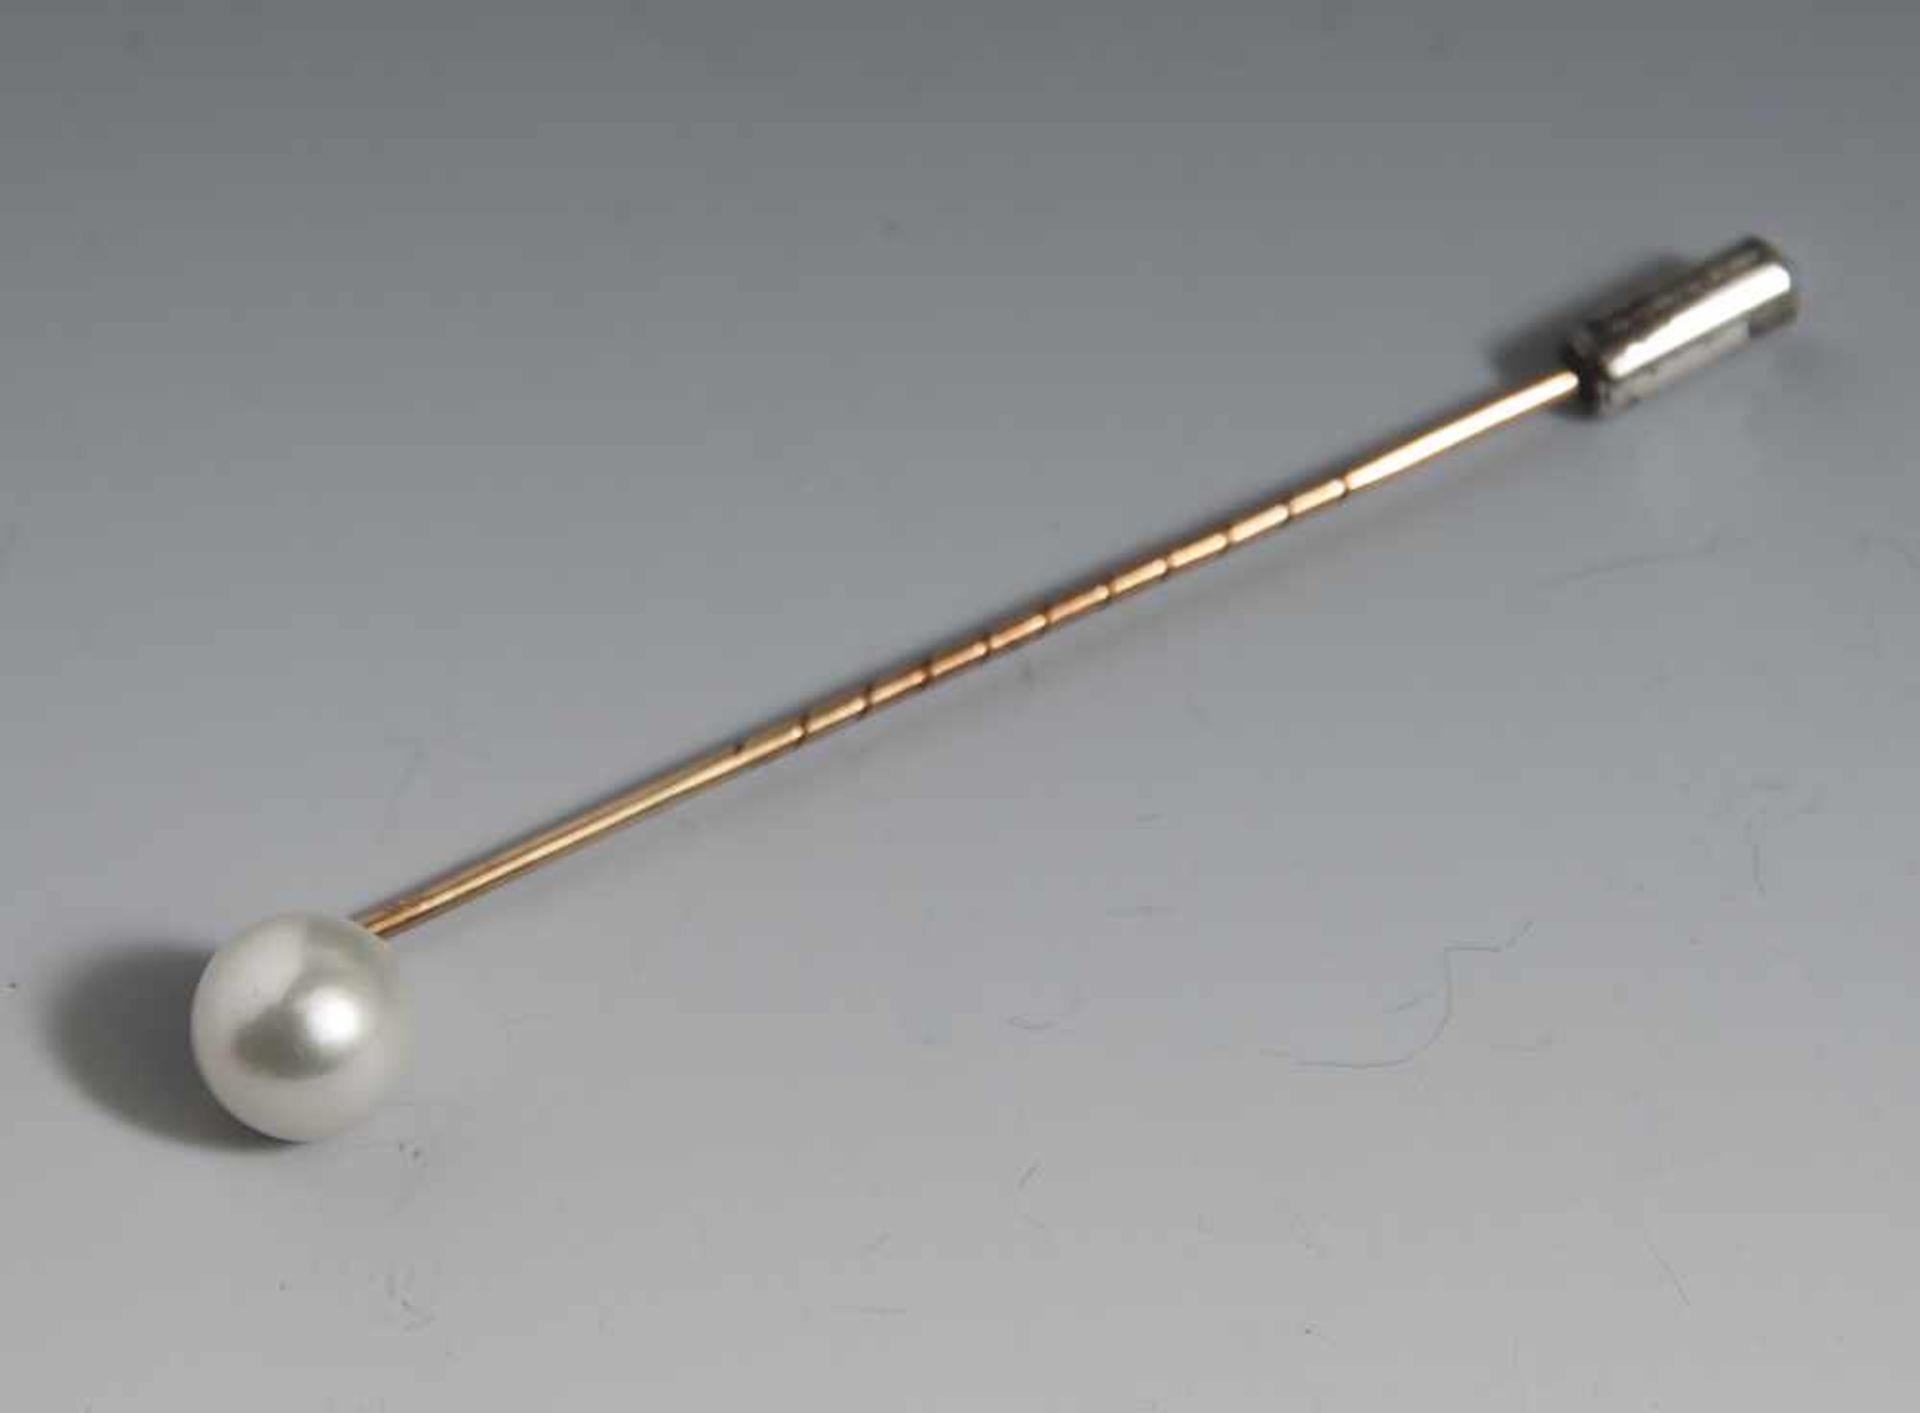 Nadel mit Zuchtperle, Gelbgold 585, weiße, runde Perle, DM. ca. 9 mm. Ca. 2,2 gr. (brutto),